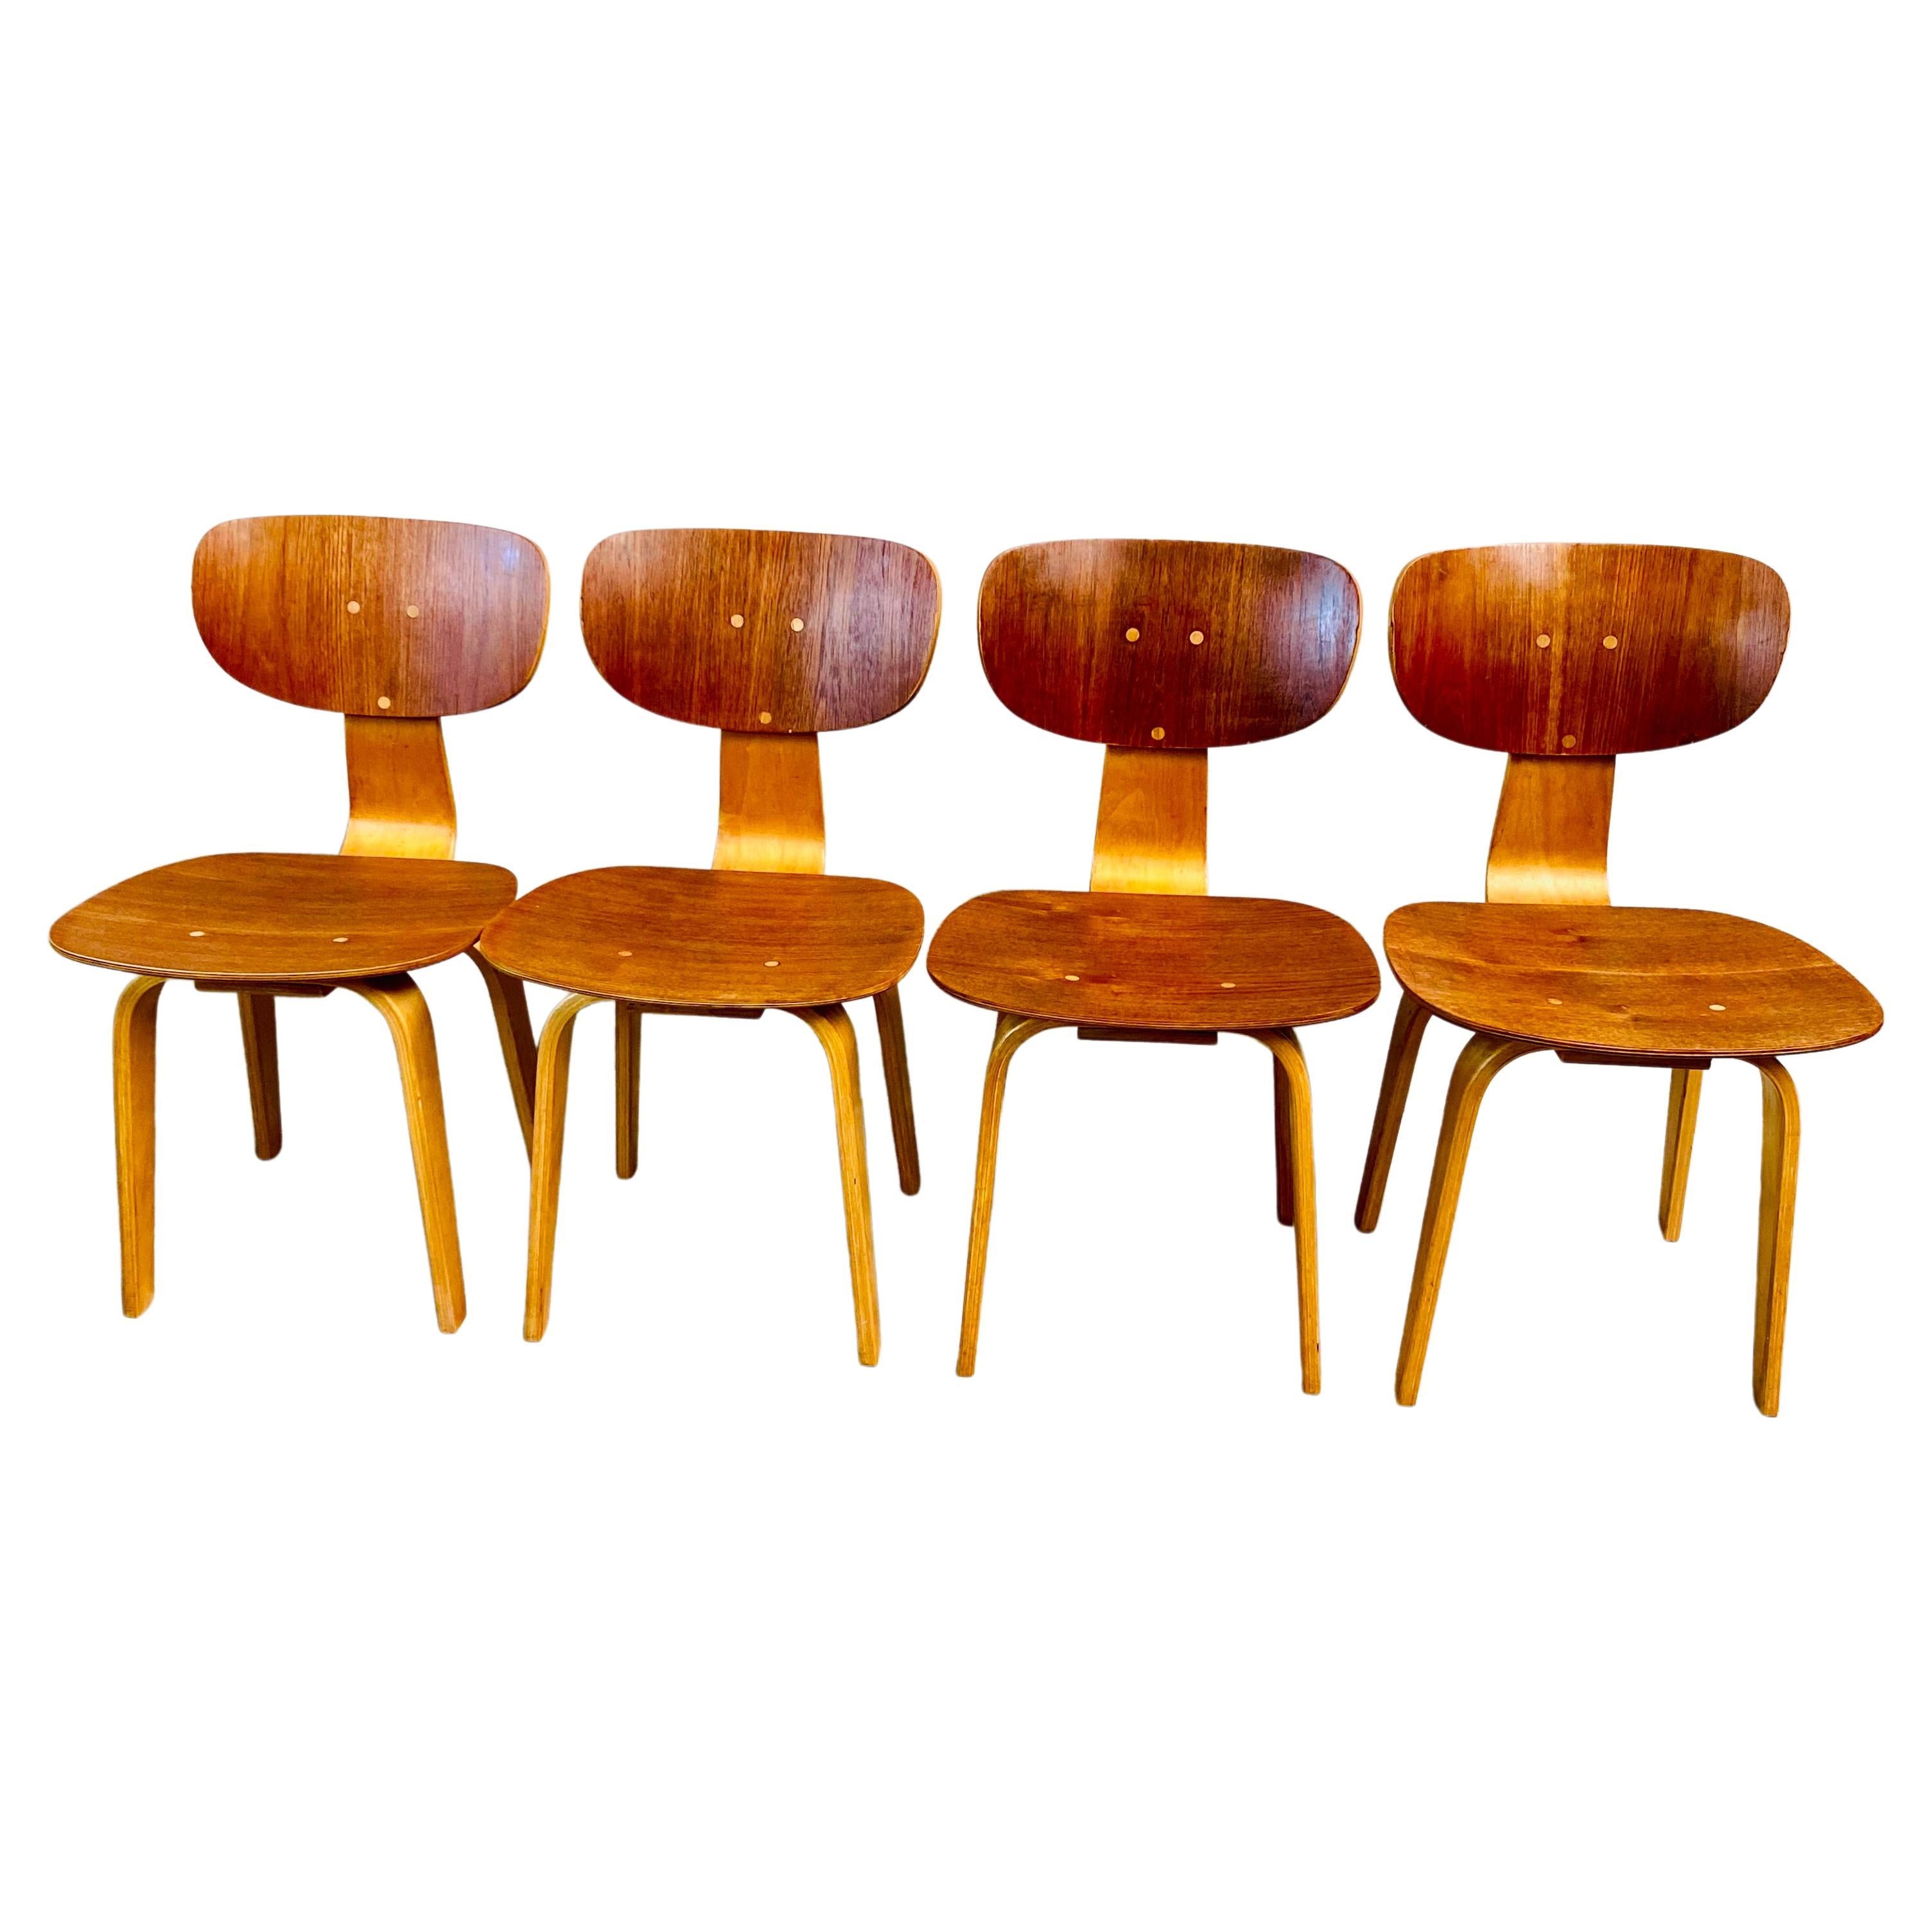 Zeitlose Eleganz: Pastoe SB02 Esszimmerstühle aus der Jahrhundertmitte von Cees Braakman

Lassen Sie sich in die goldene Ära des Designs zurückversetzen mit unserer exquisiten Kollektion von Mid-Century Pastoe SB02 Esszimmerstühlen, die 1950 von dem